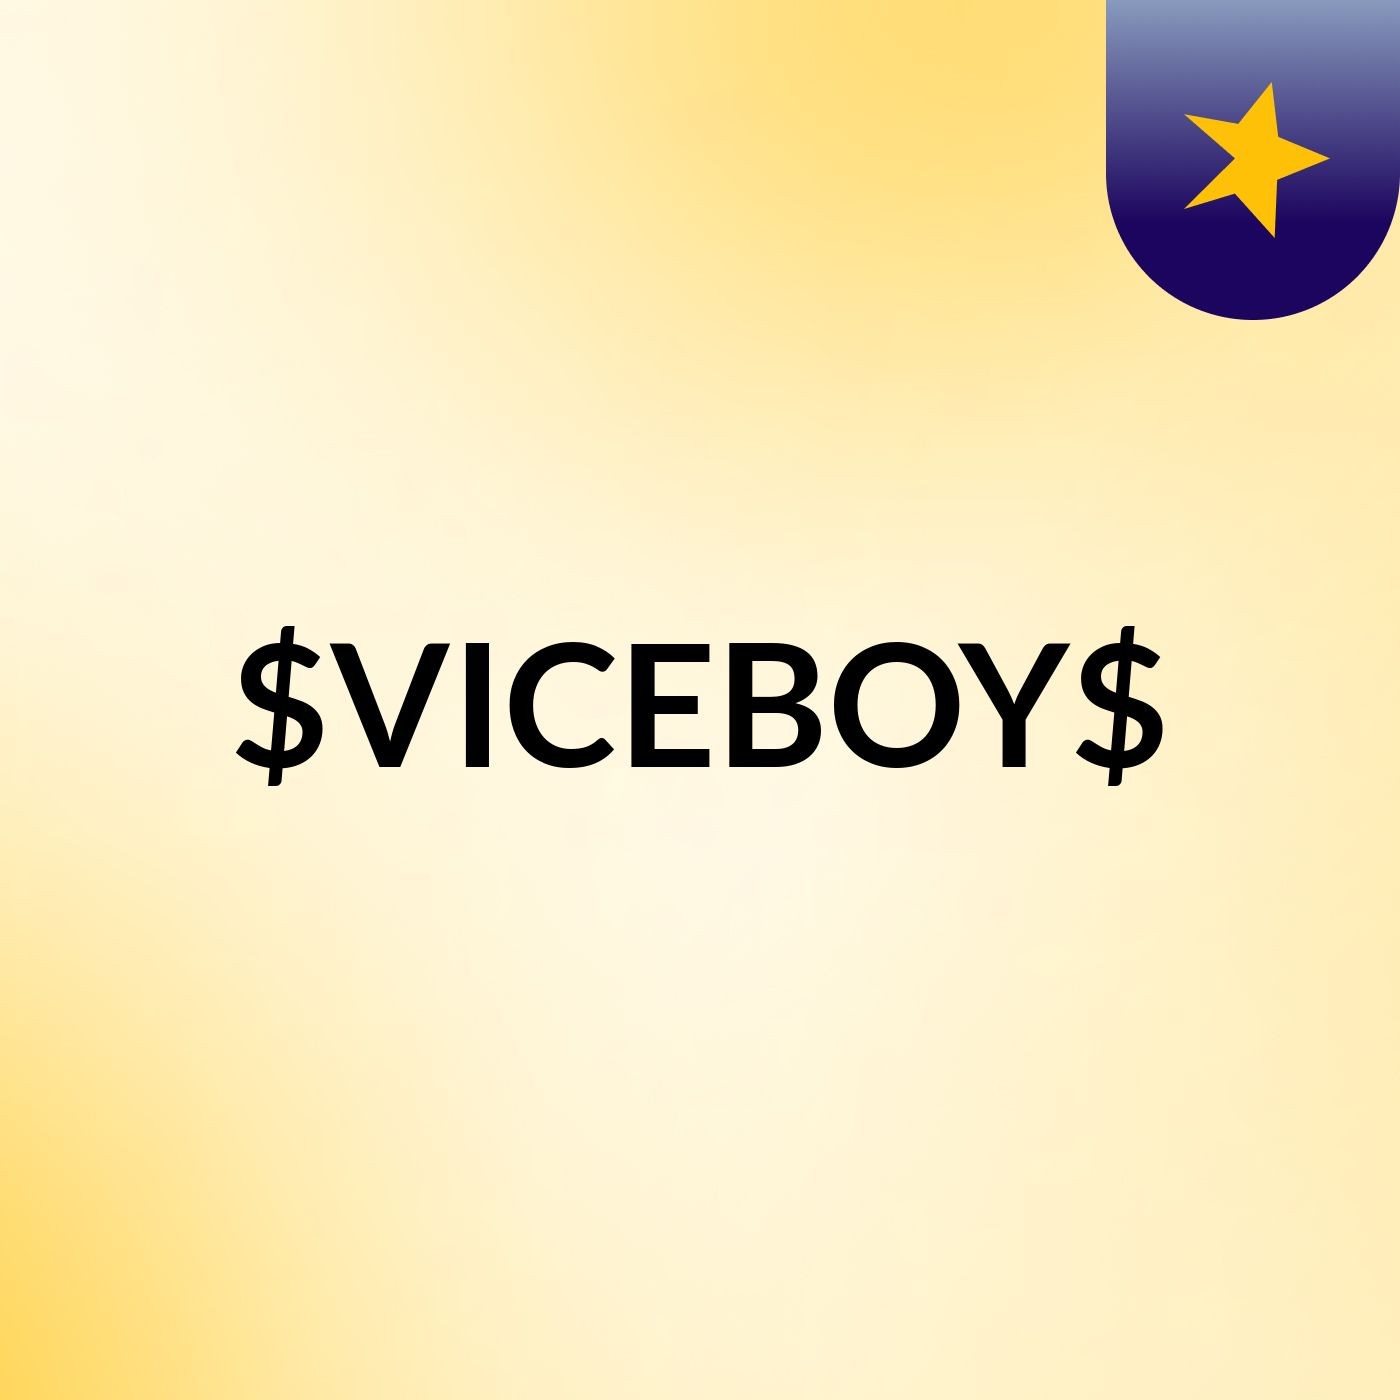 $VICEBOY$